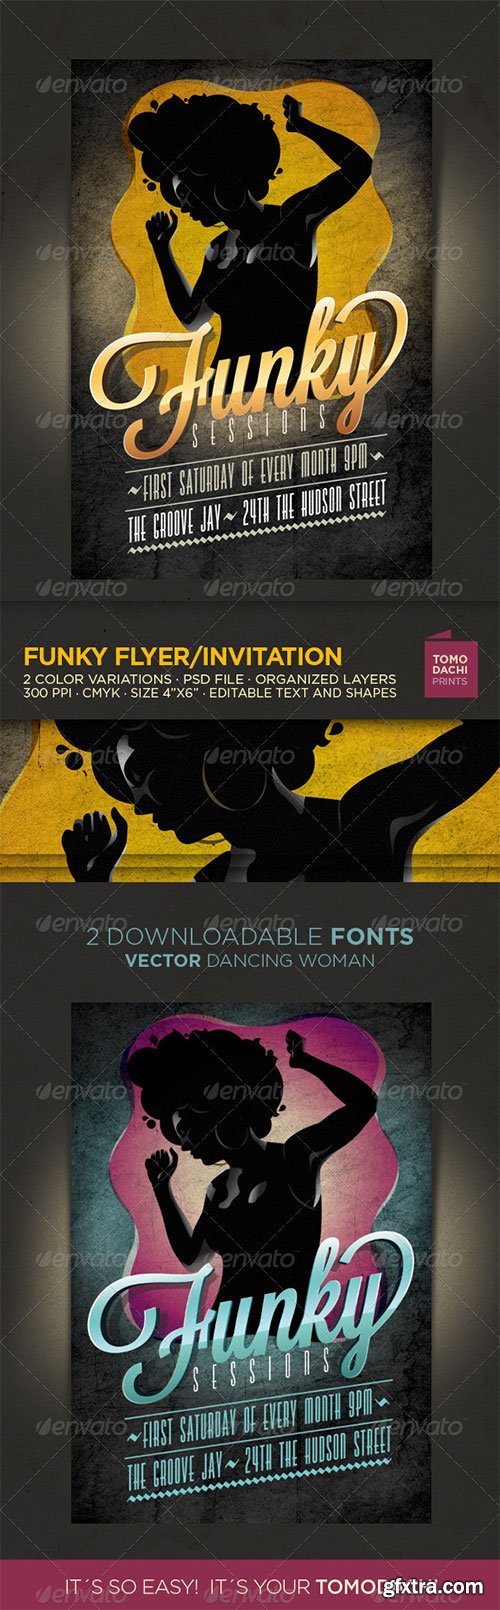 GraphicRiver - Funky Flyer/Invitation